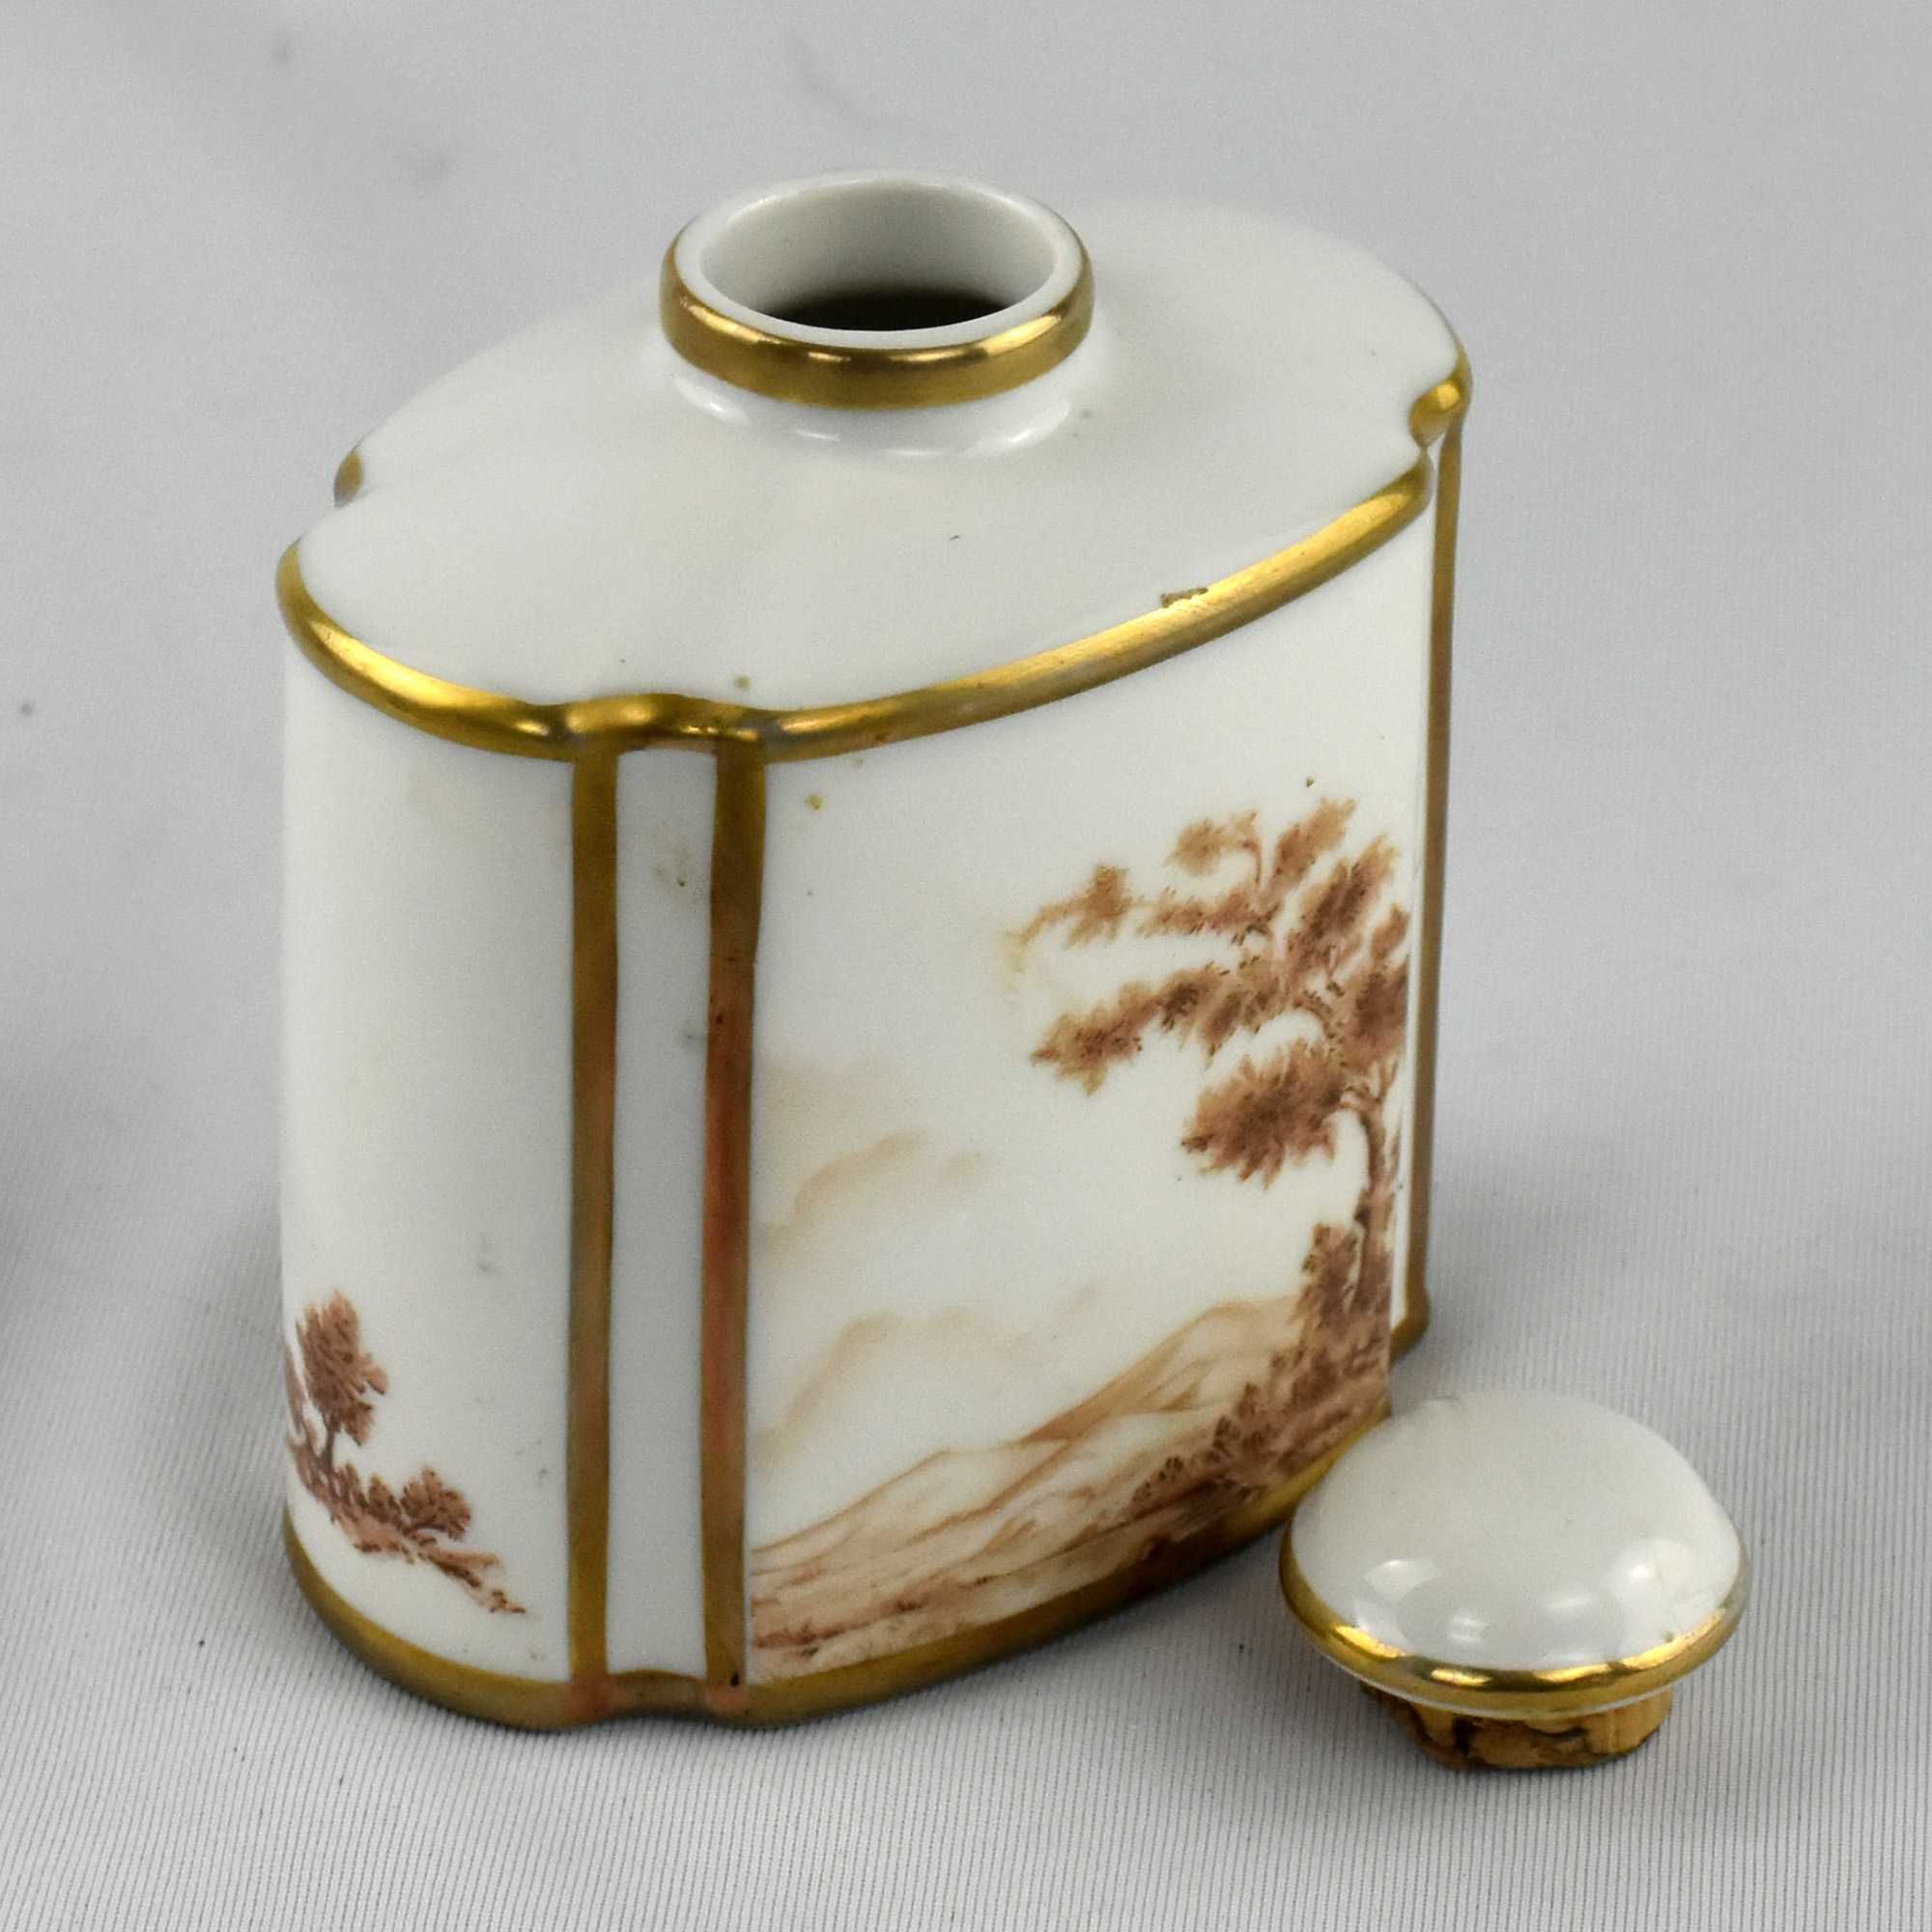 Frasco de perfume em porcelana decorado com paisagens e friso a ouro